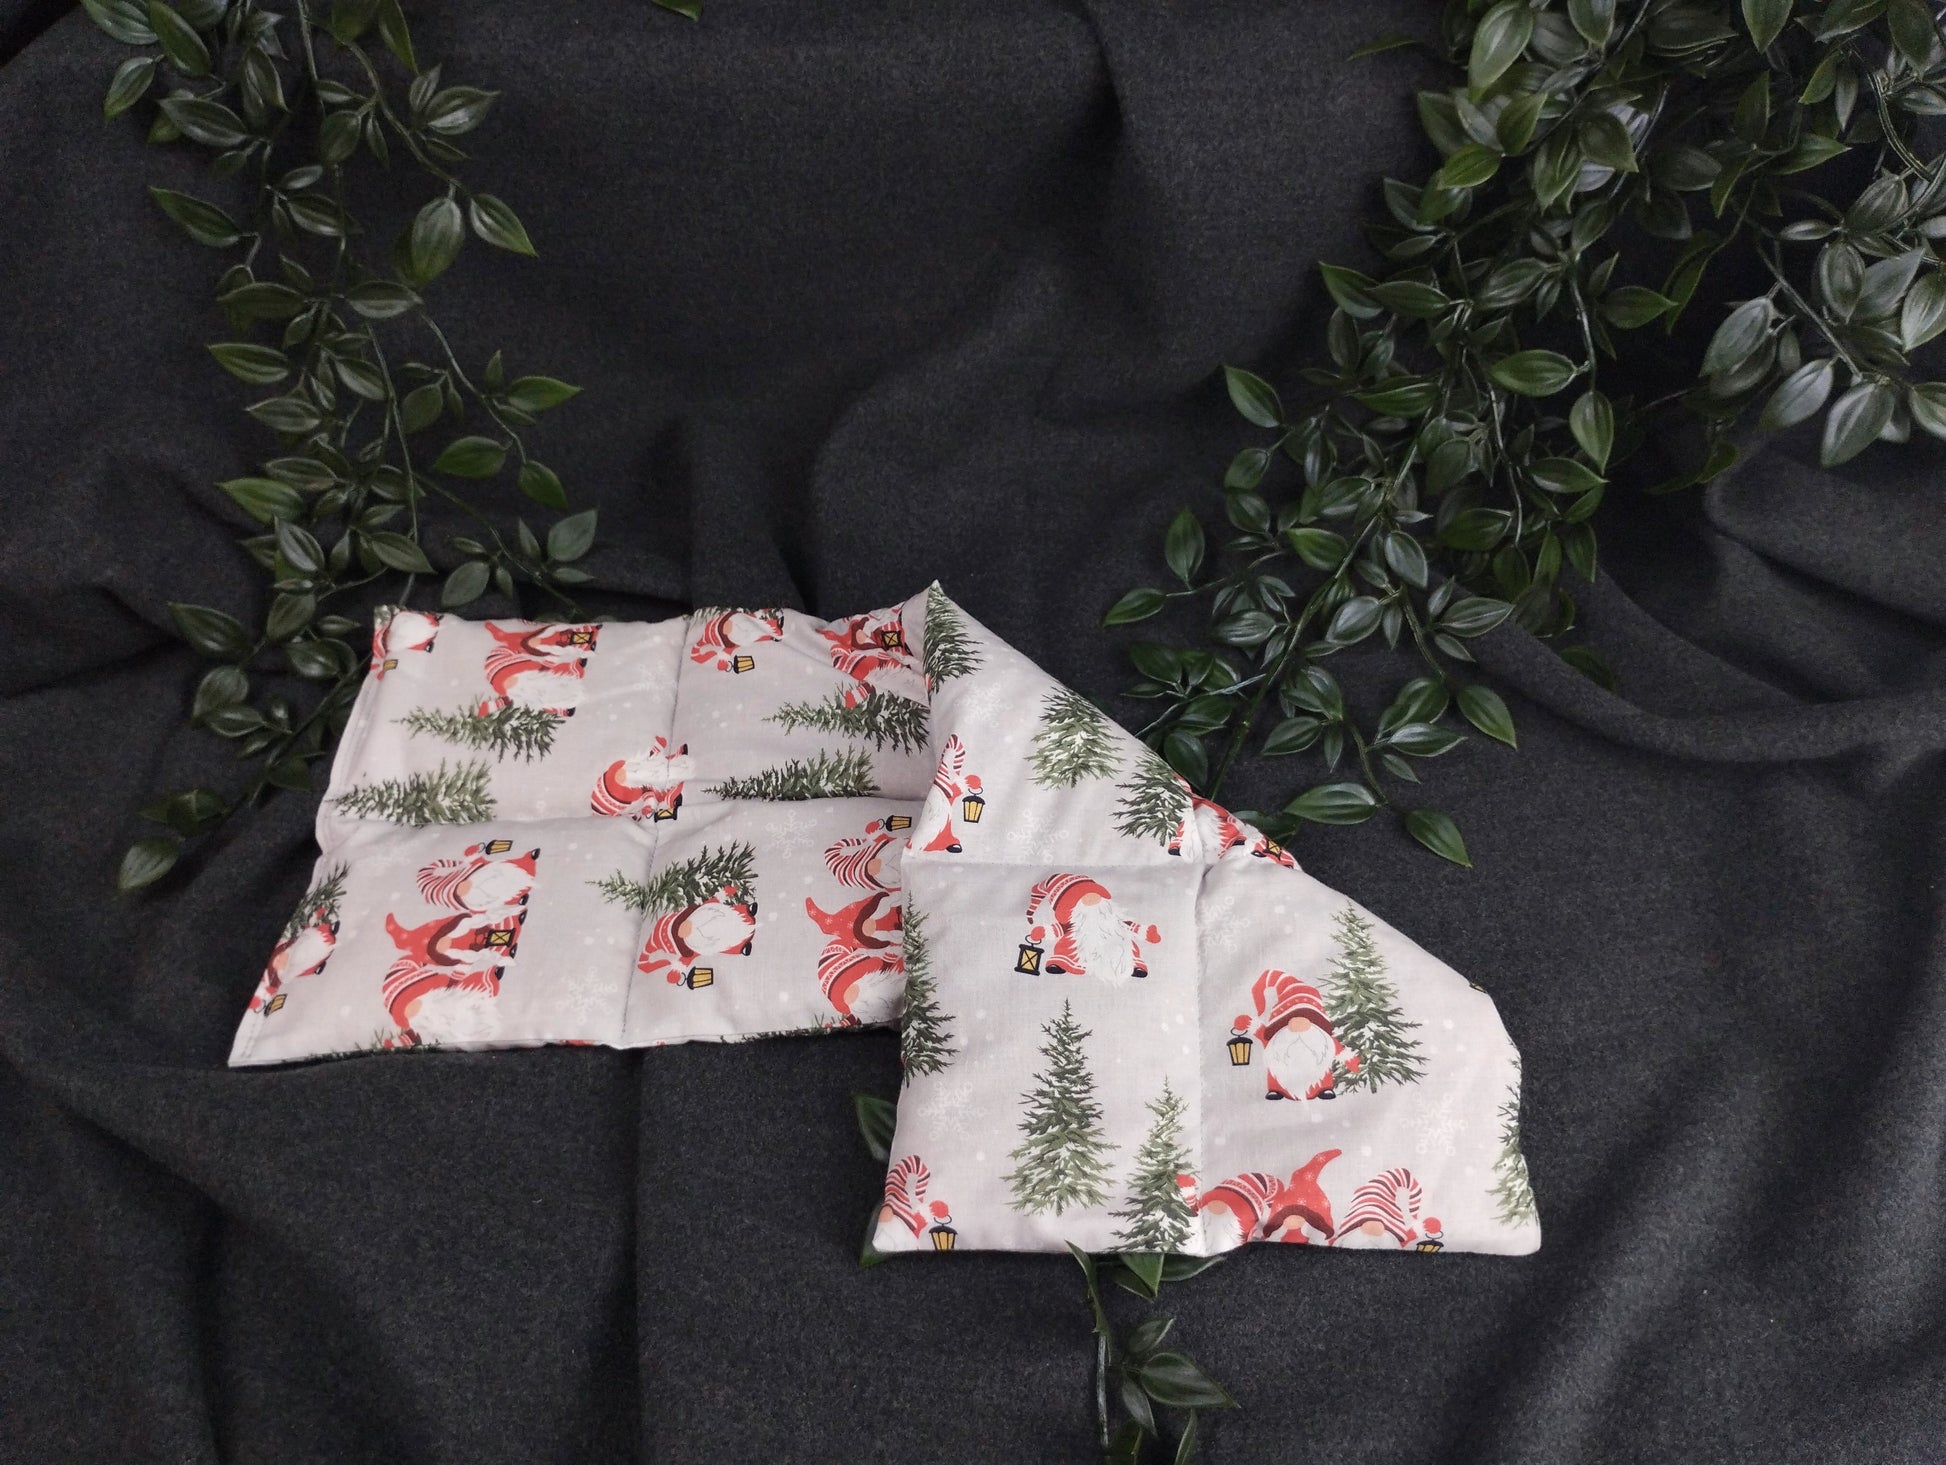 Körnerkissen im weihnachtlichem Look mit Weihnachtsgnomen, die eine Laterne tragen. Verziert wird die graue Landschaft mit grünen Tannenbäumen